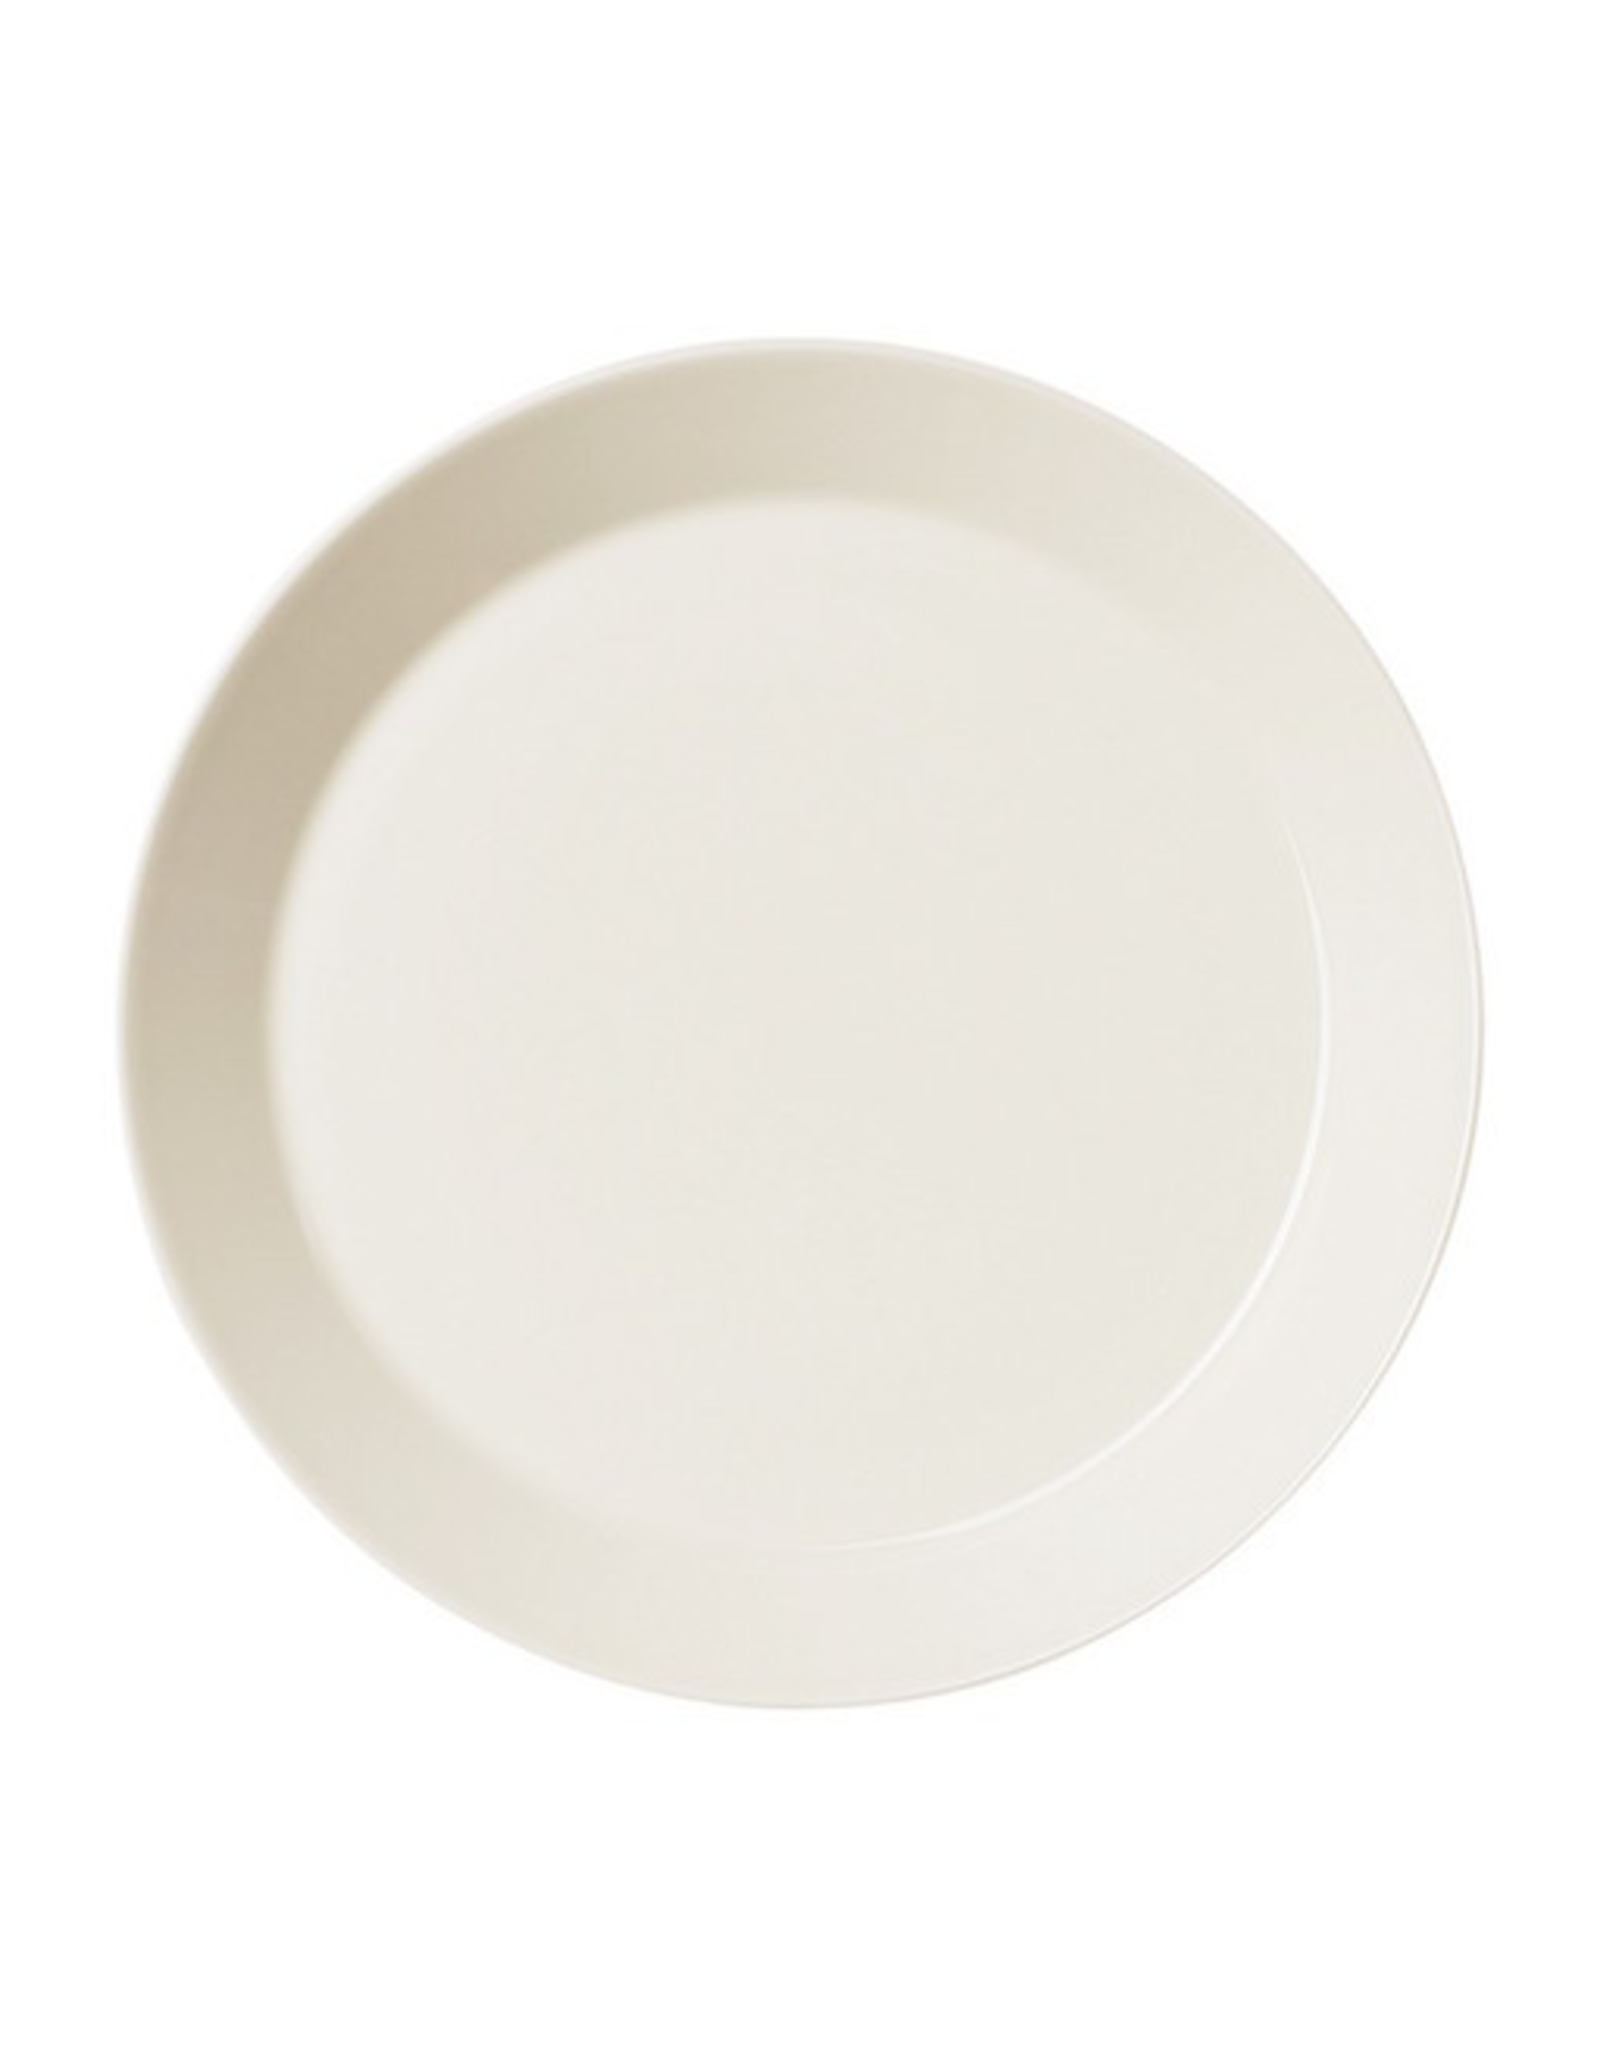 TEEMA 白色系列餐具